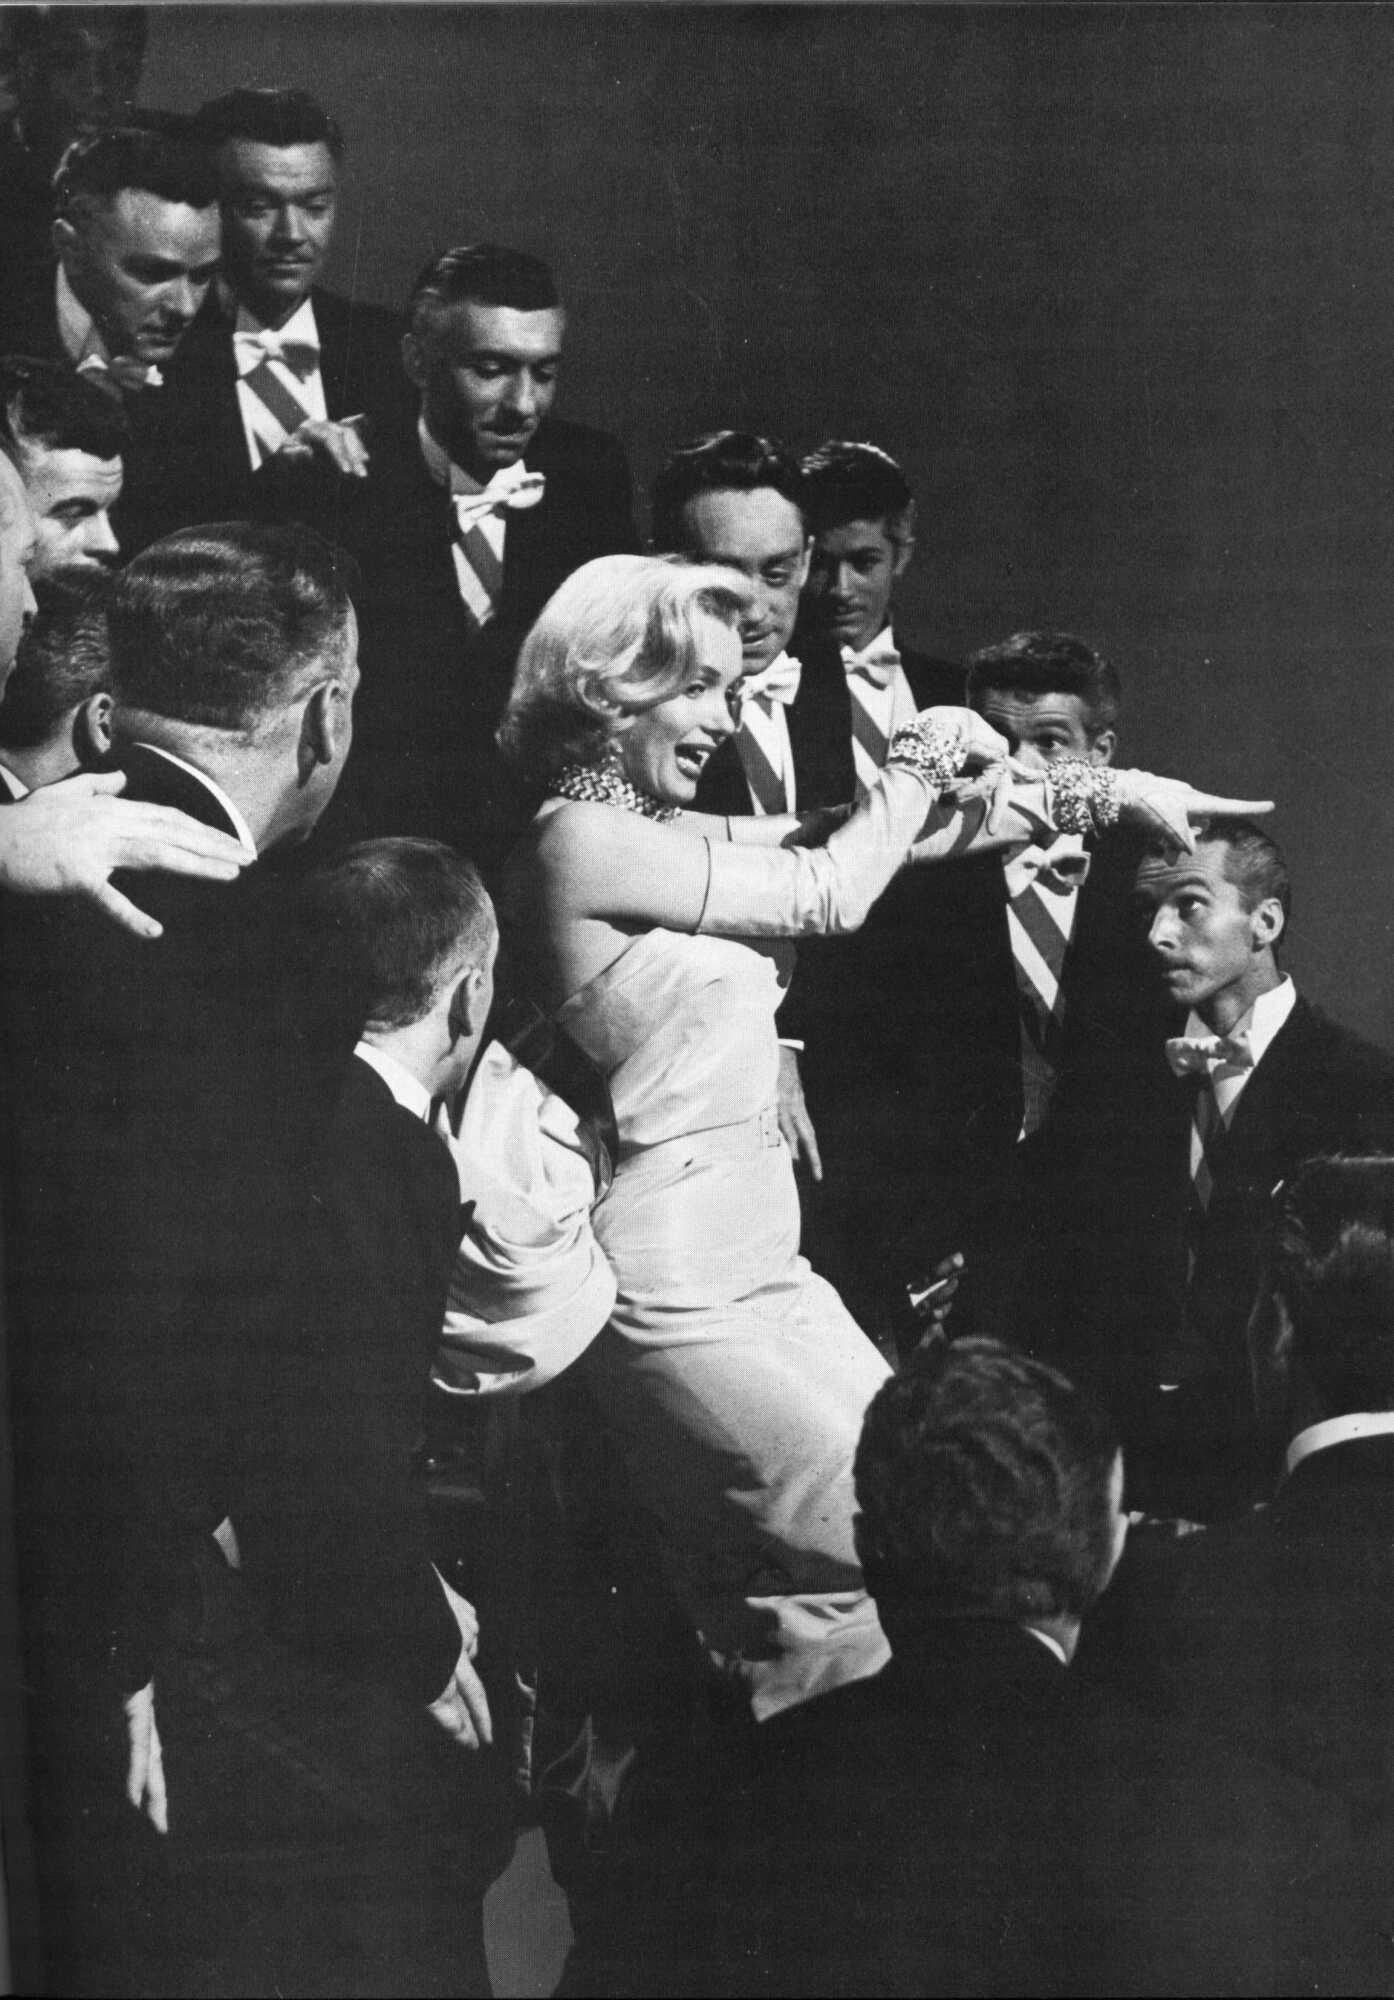 Gentlemen Prefer Blondes - Marilyn Monroe Photo (14457742) - Fanpop